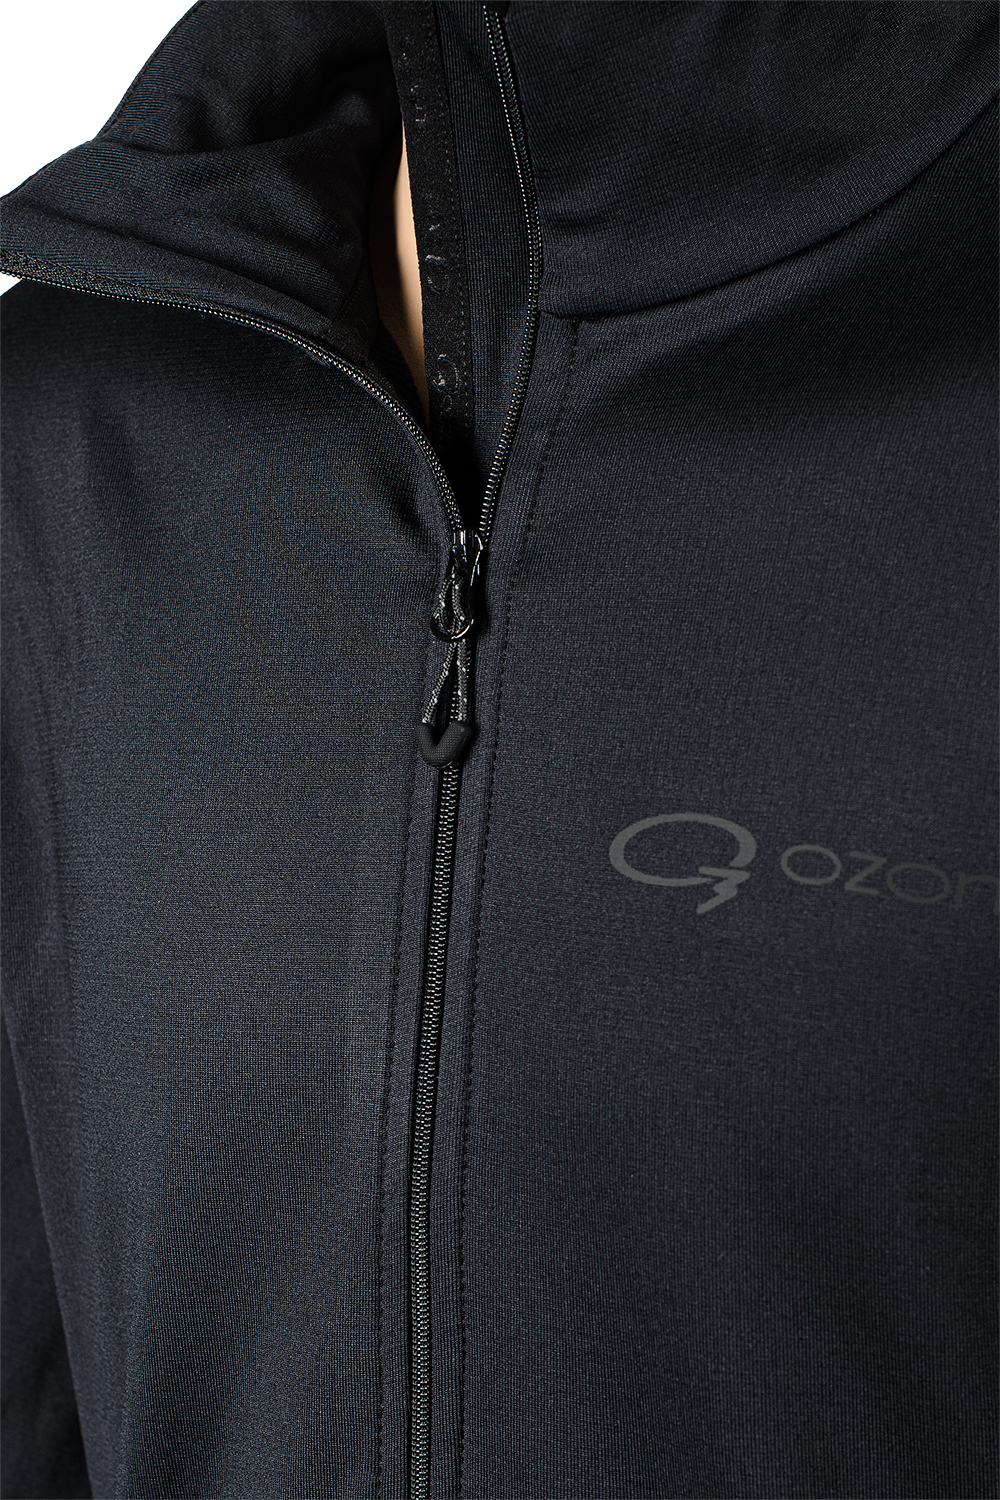 Мужской пуловер термобелье Pirs-1 купить в магазине экипировки для альпинизма и туризма O3 Ozone